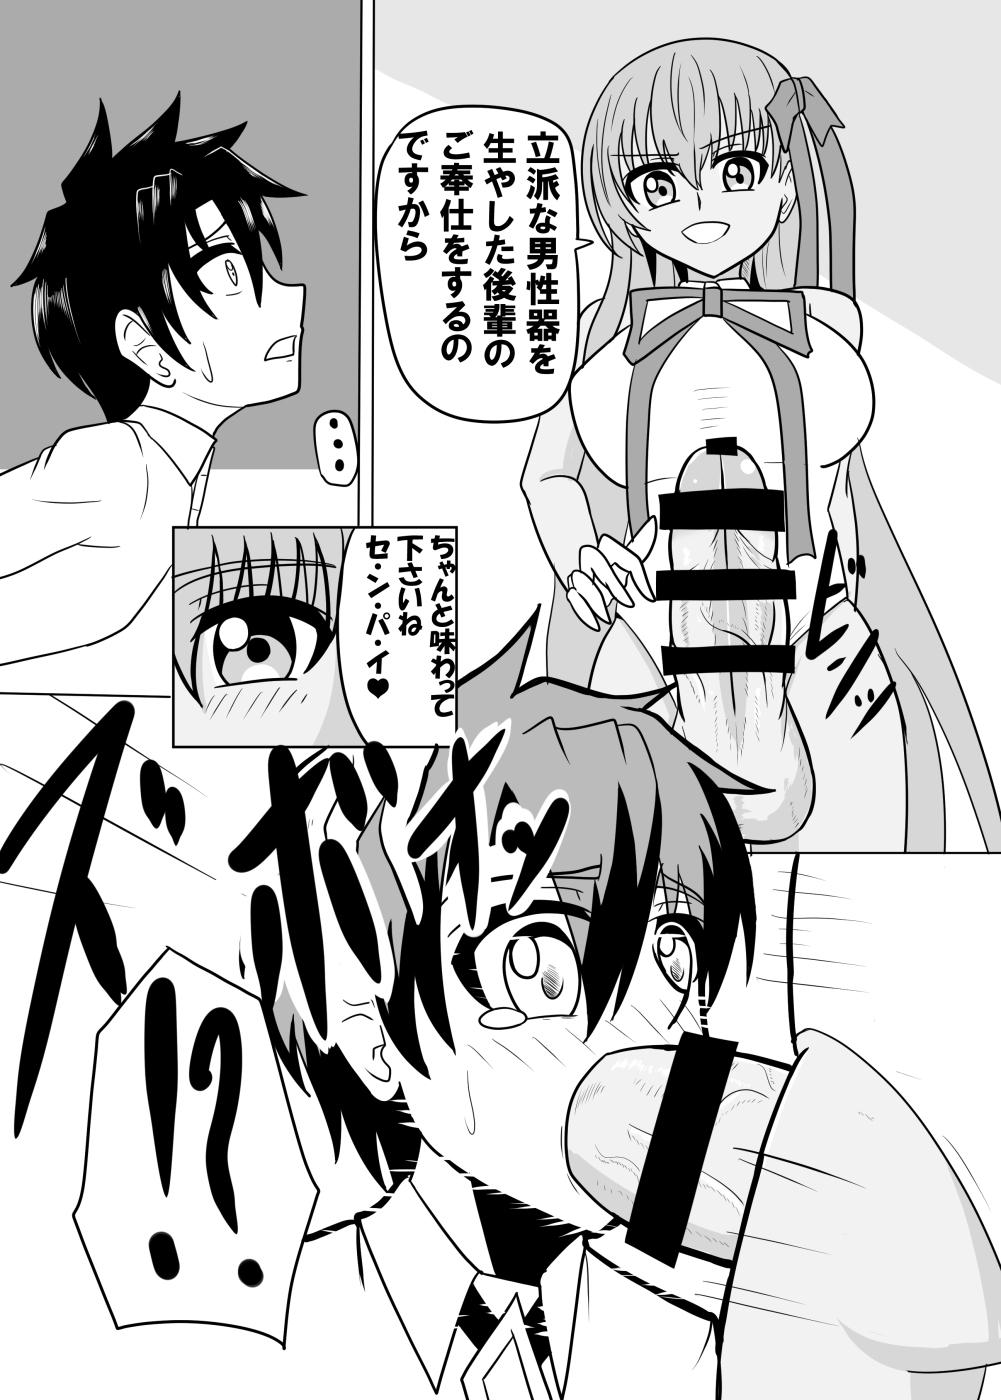 Tits Watashi no onaho 〈omocha〉 ni natte kudasai senpai - Fate grand order Teenxxx - Page 6